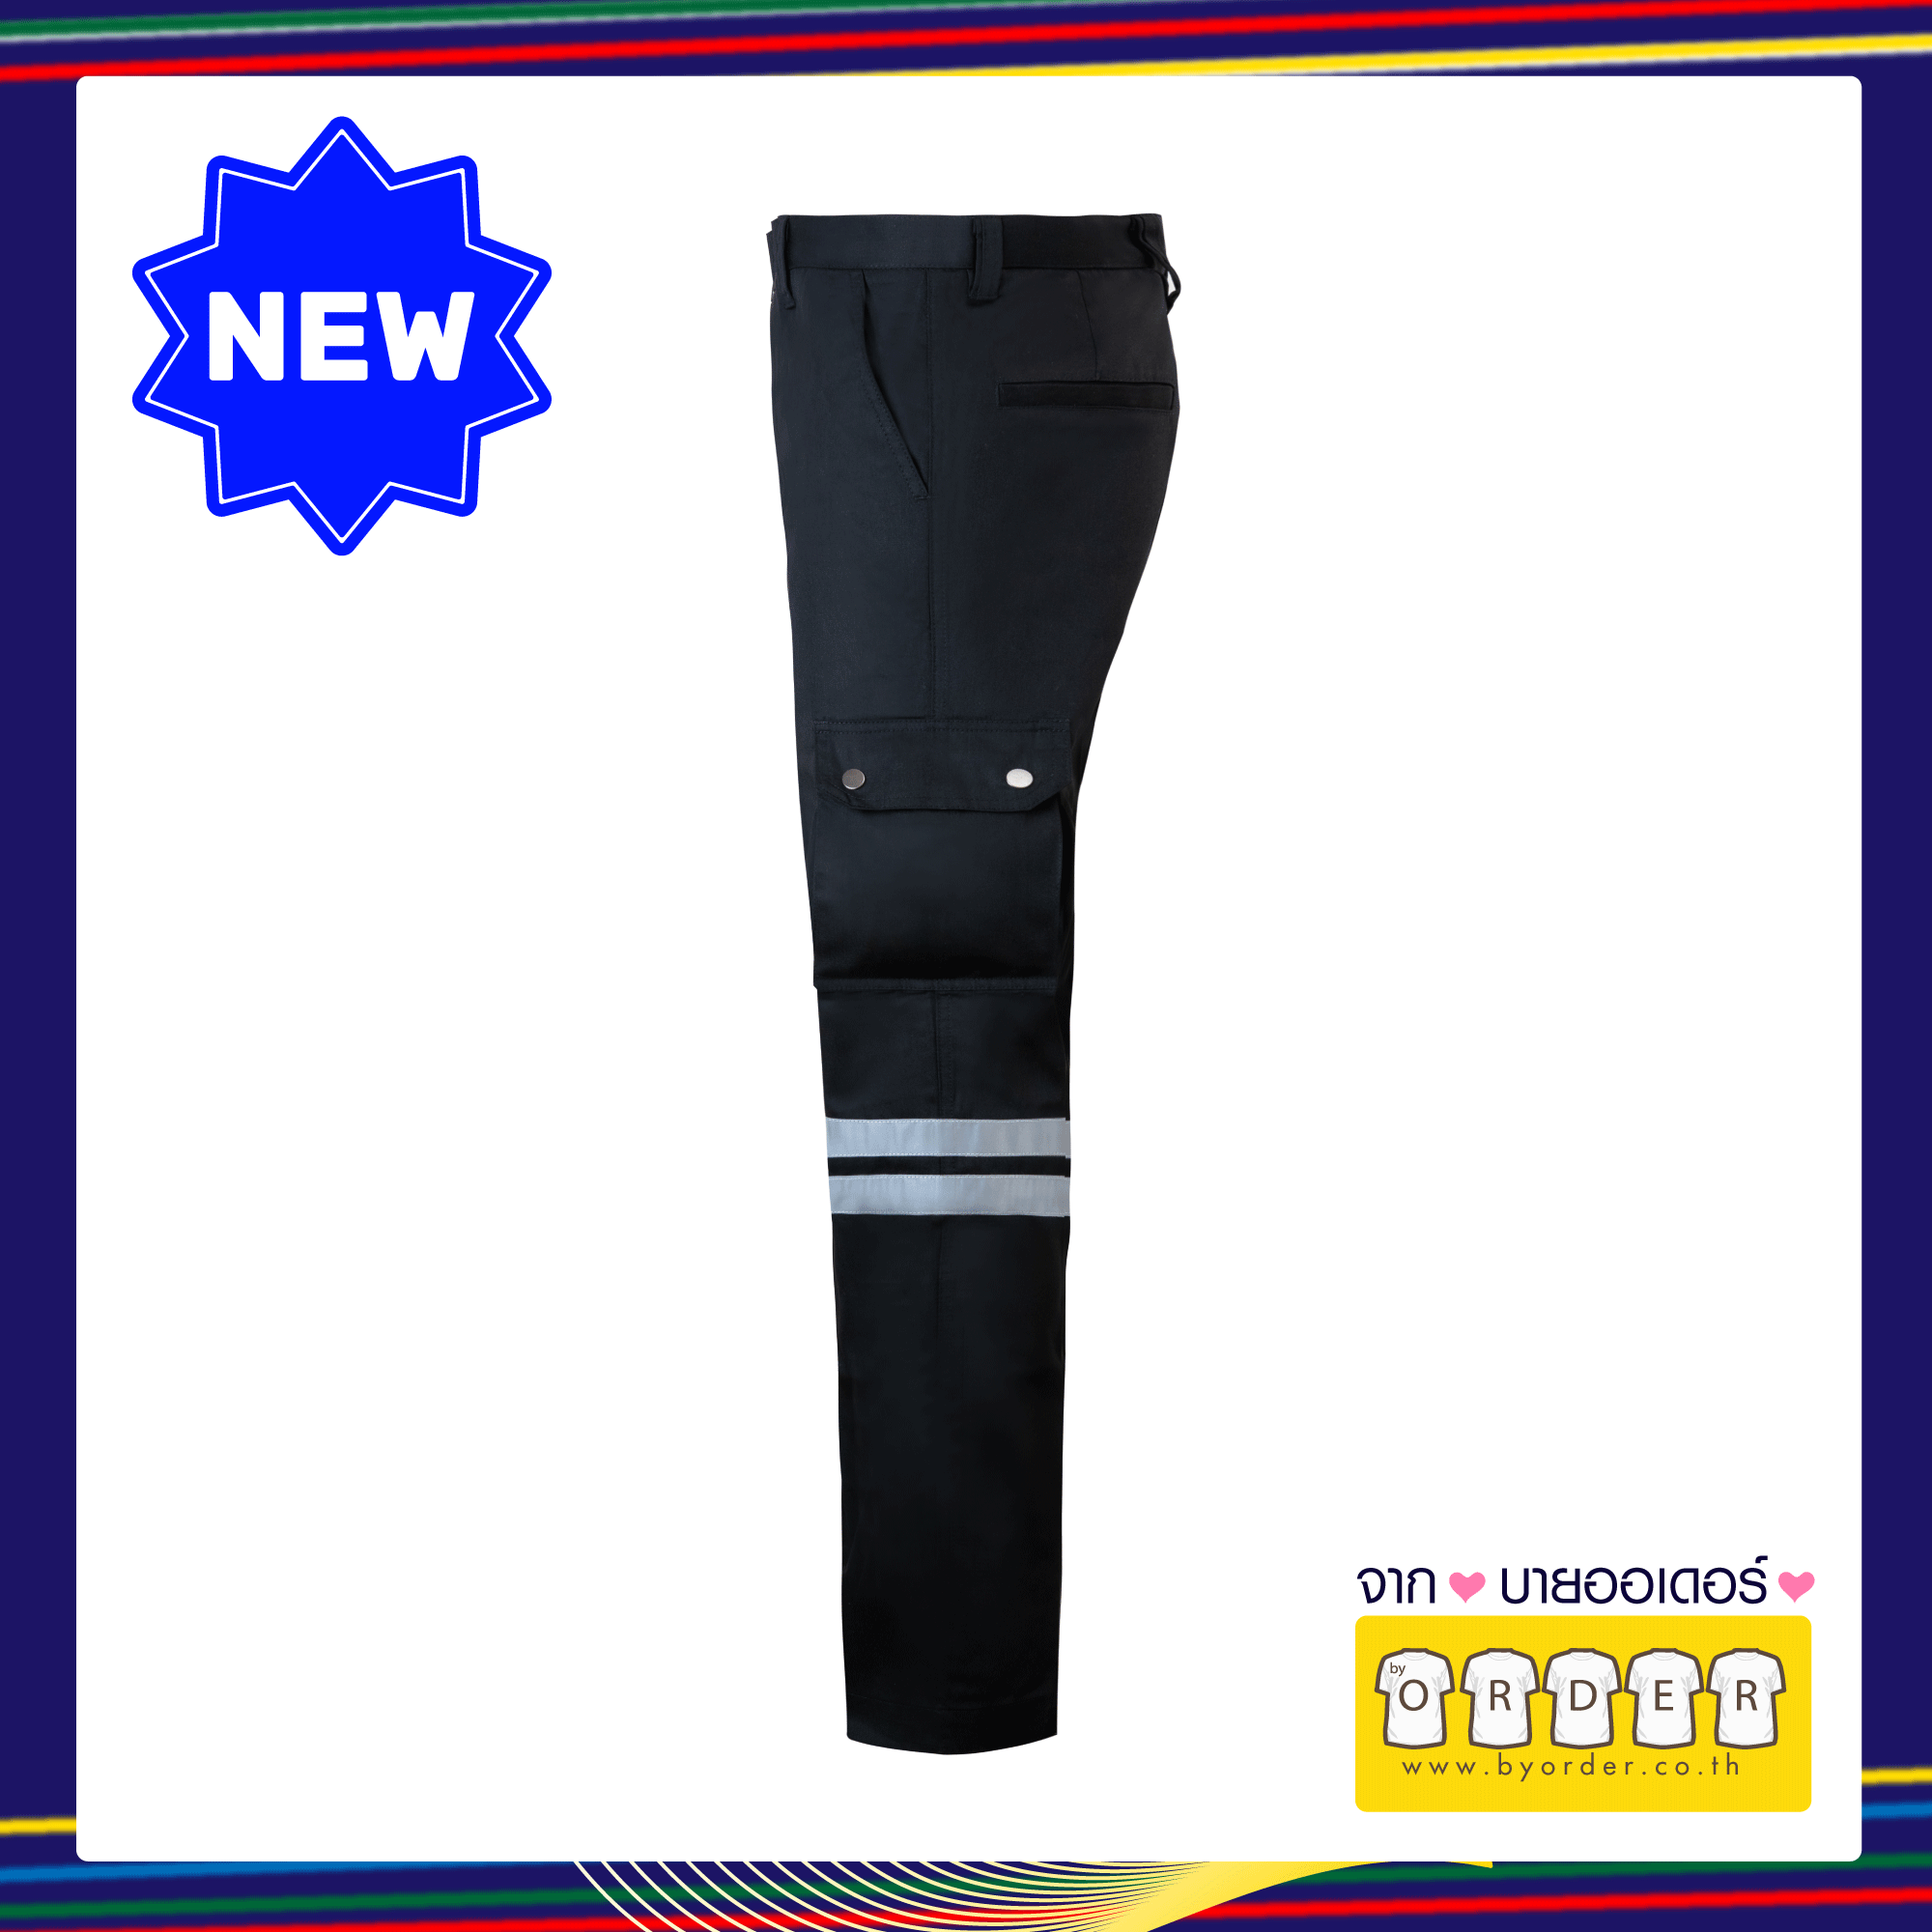 กางเกงคาร์โก้ V05  สีดำ รุ่นติดเทปสะท้อนแสง 2 แถบ กางเกงกู้ภัย กางเกงกู้ชีพ กางเกงขายาวหลายกระเป๋า  สินค้าขายดีคุณภาพแบรนด์เนม ขนาด เอว 28 ขนาด เอว 28